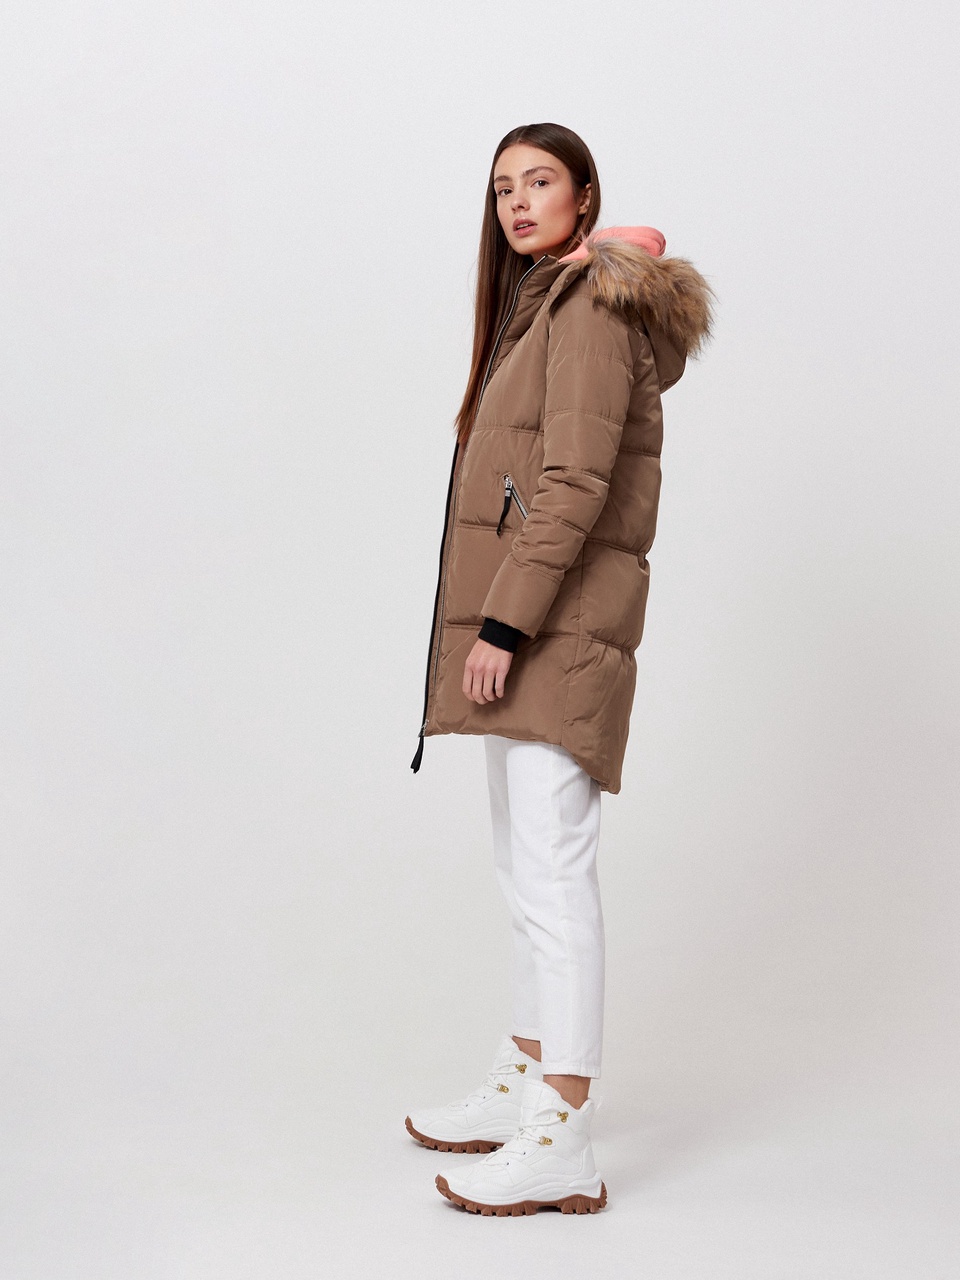 Стеганое пальто с капюшоном - 3 999 ₽, заказать онлайн.